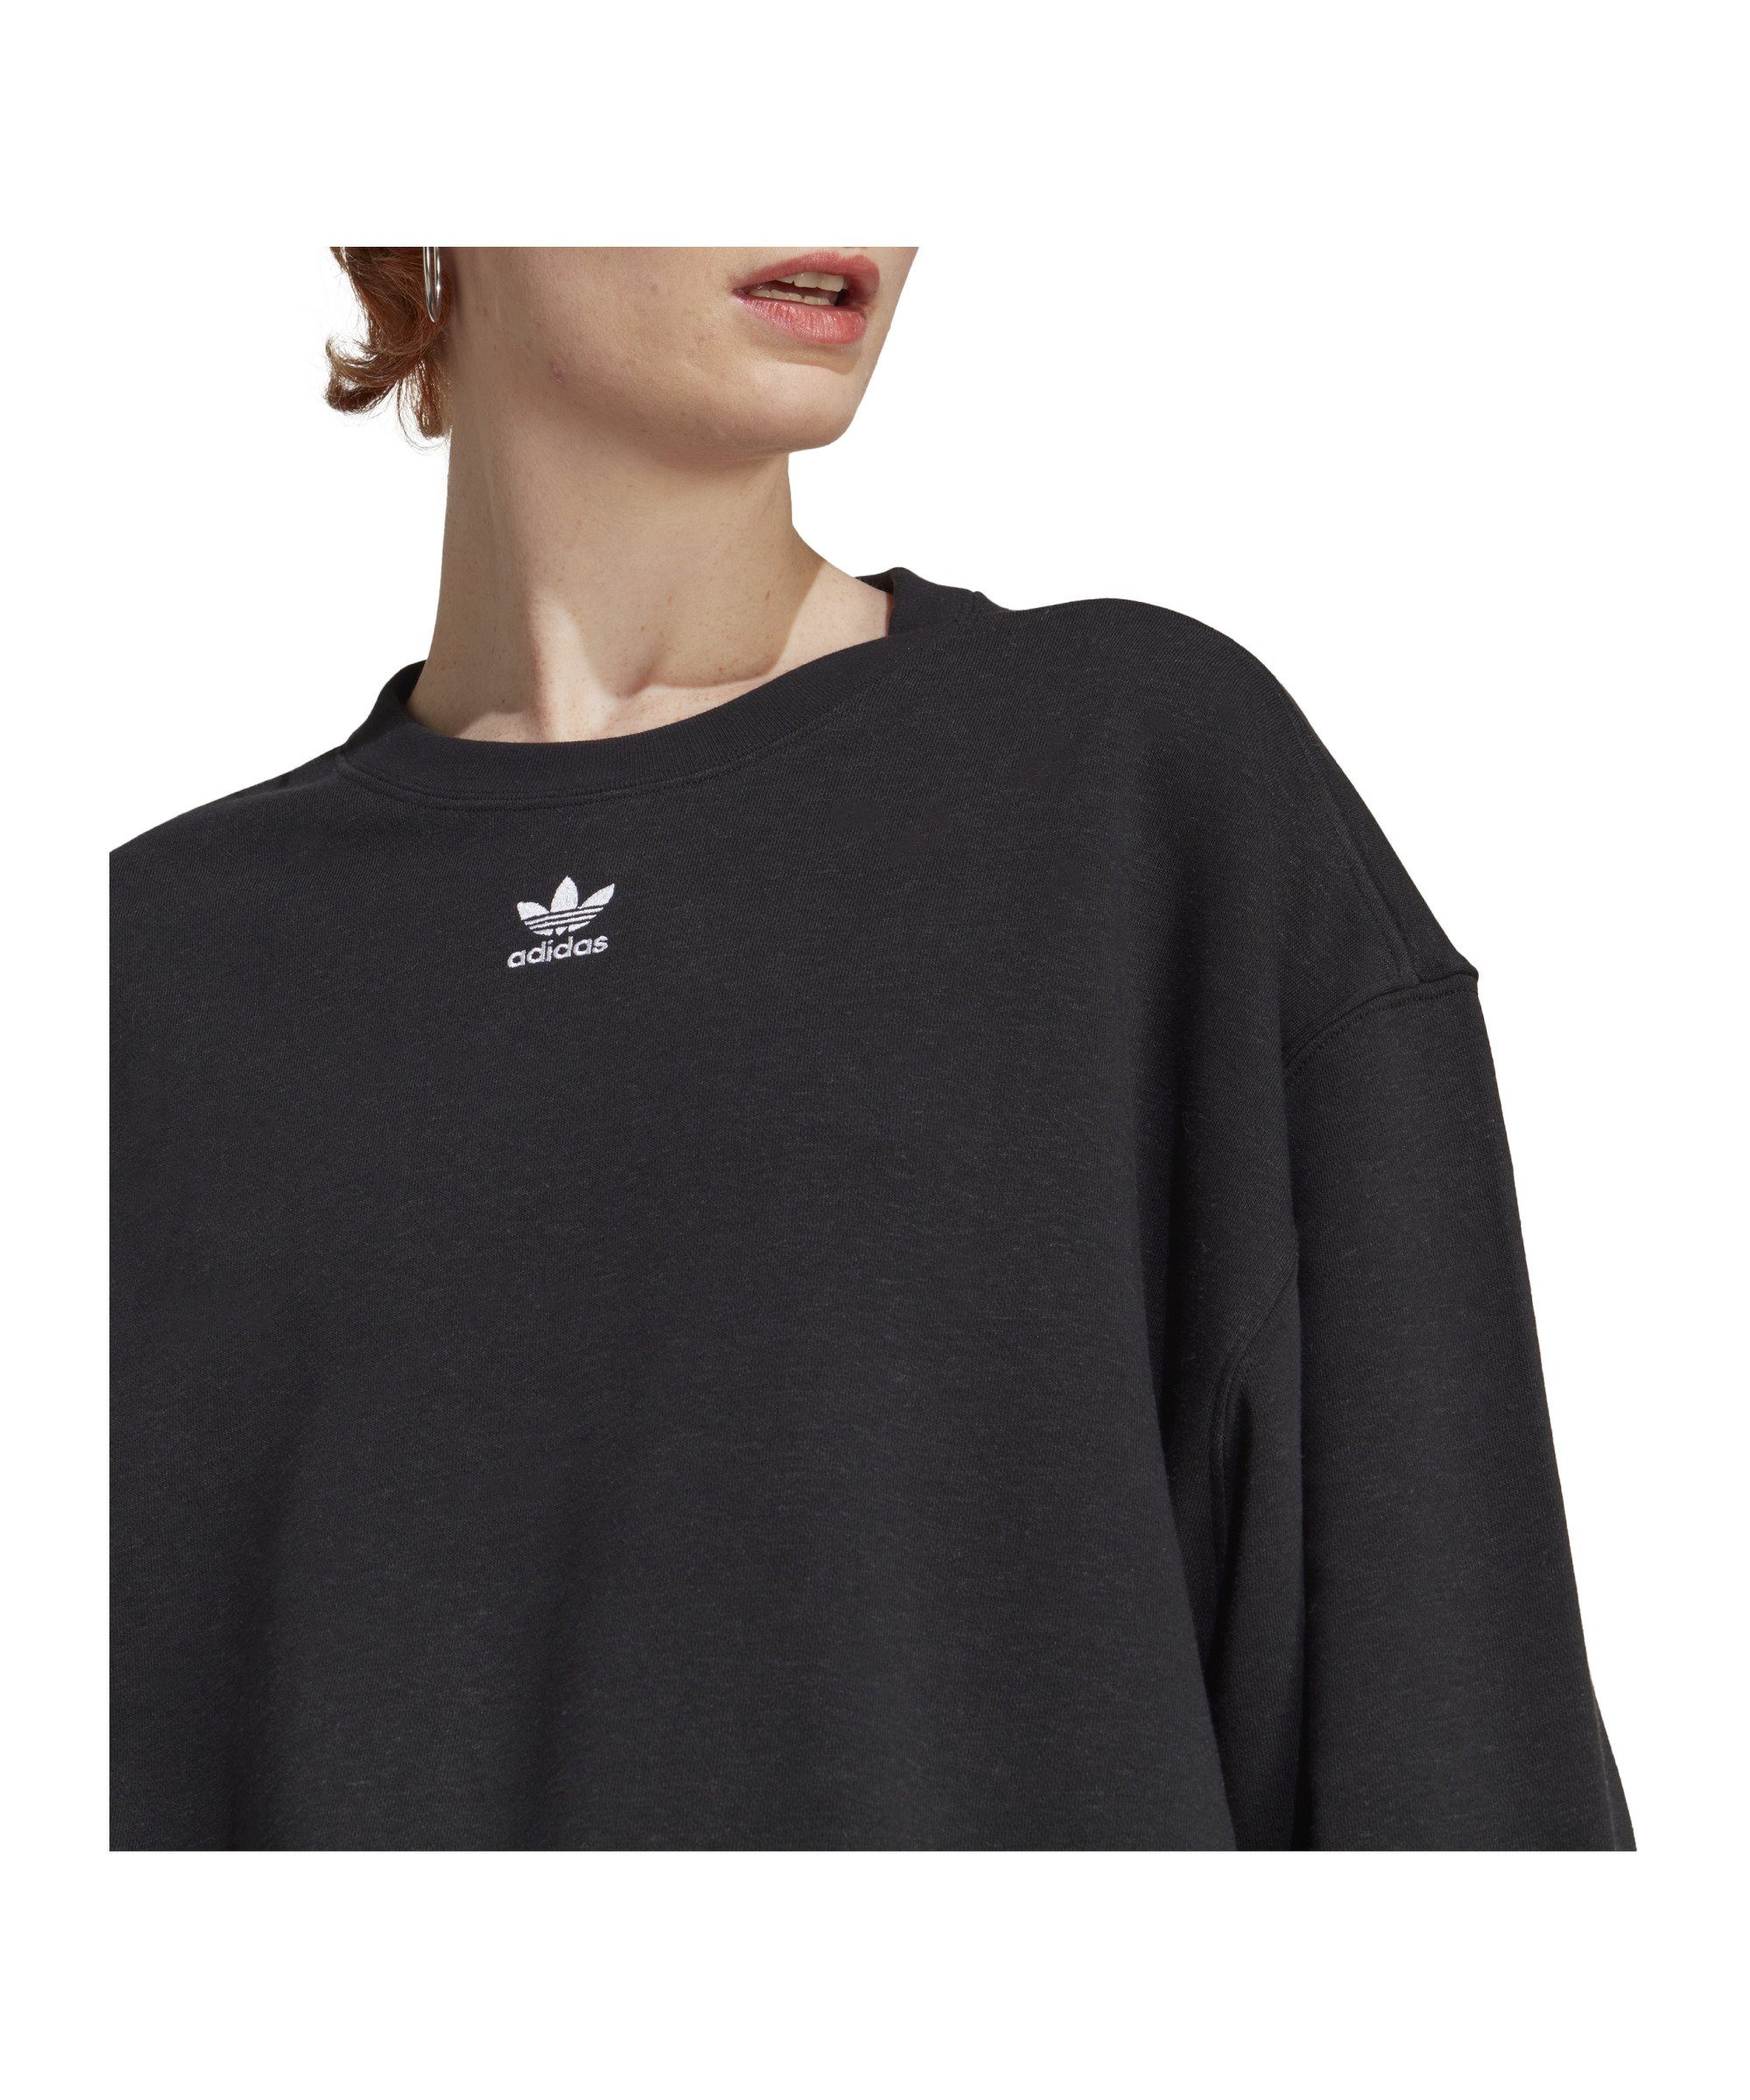 Originals Damen adidas Sweater Sweatshirt Ess. schwarz